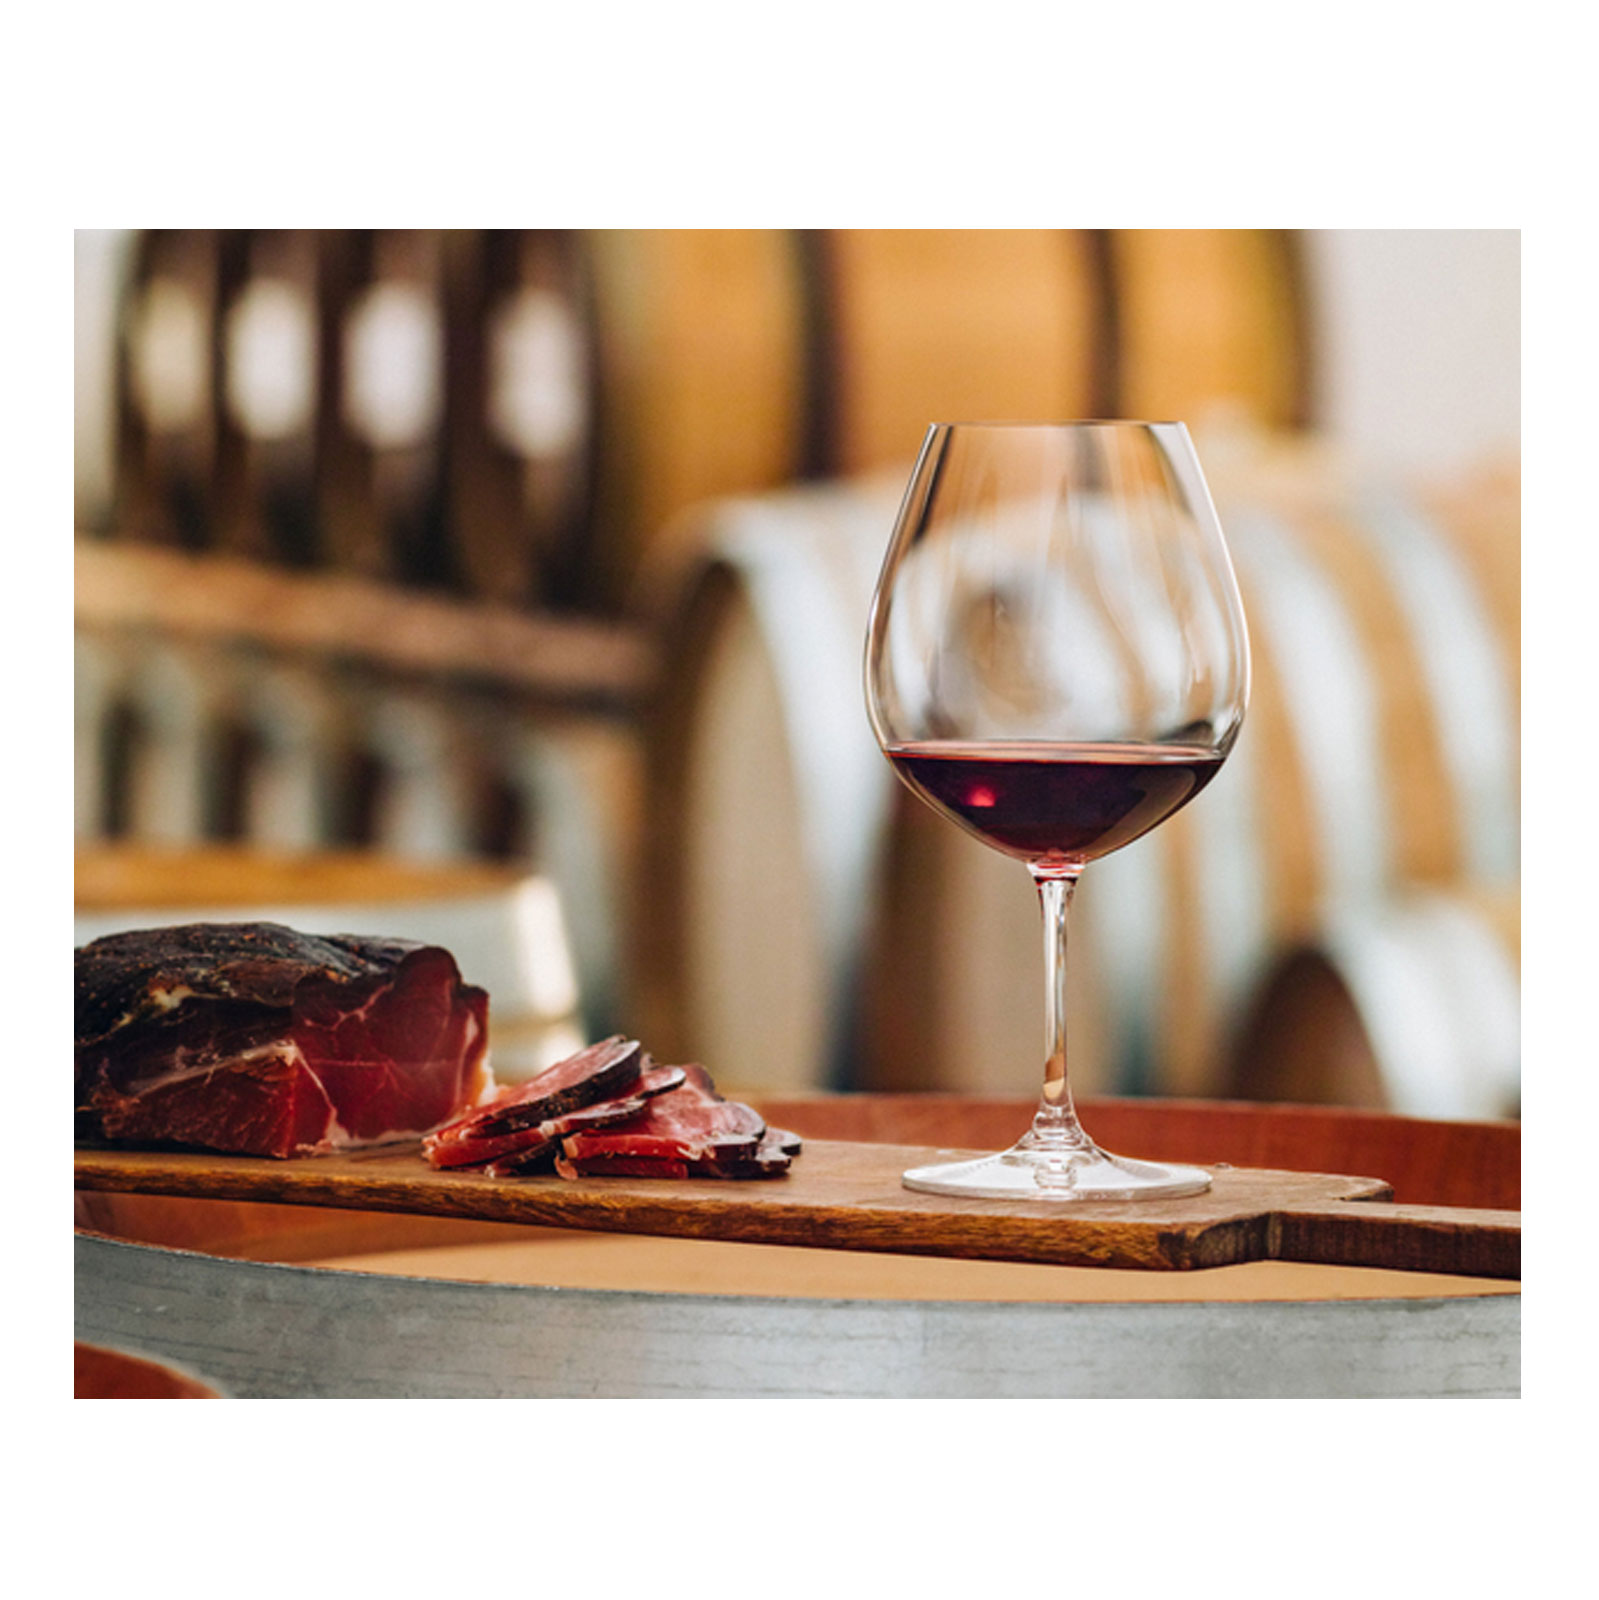 Riedel Vinum Wein und Prosseco Glas Set